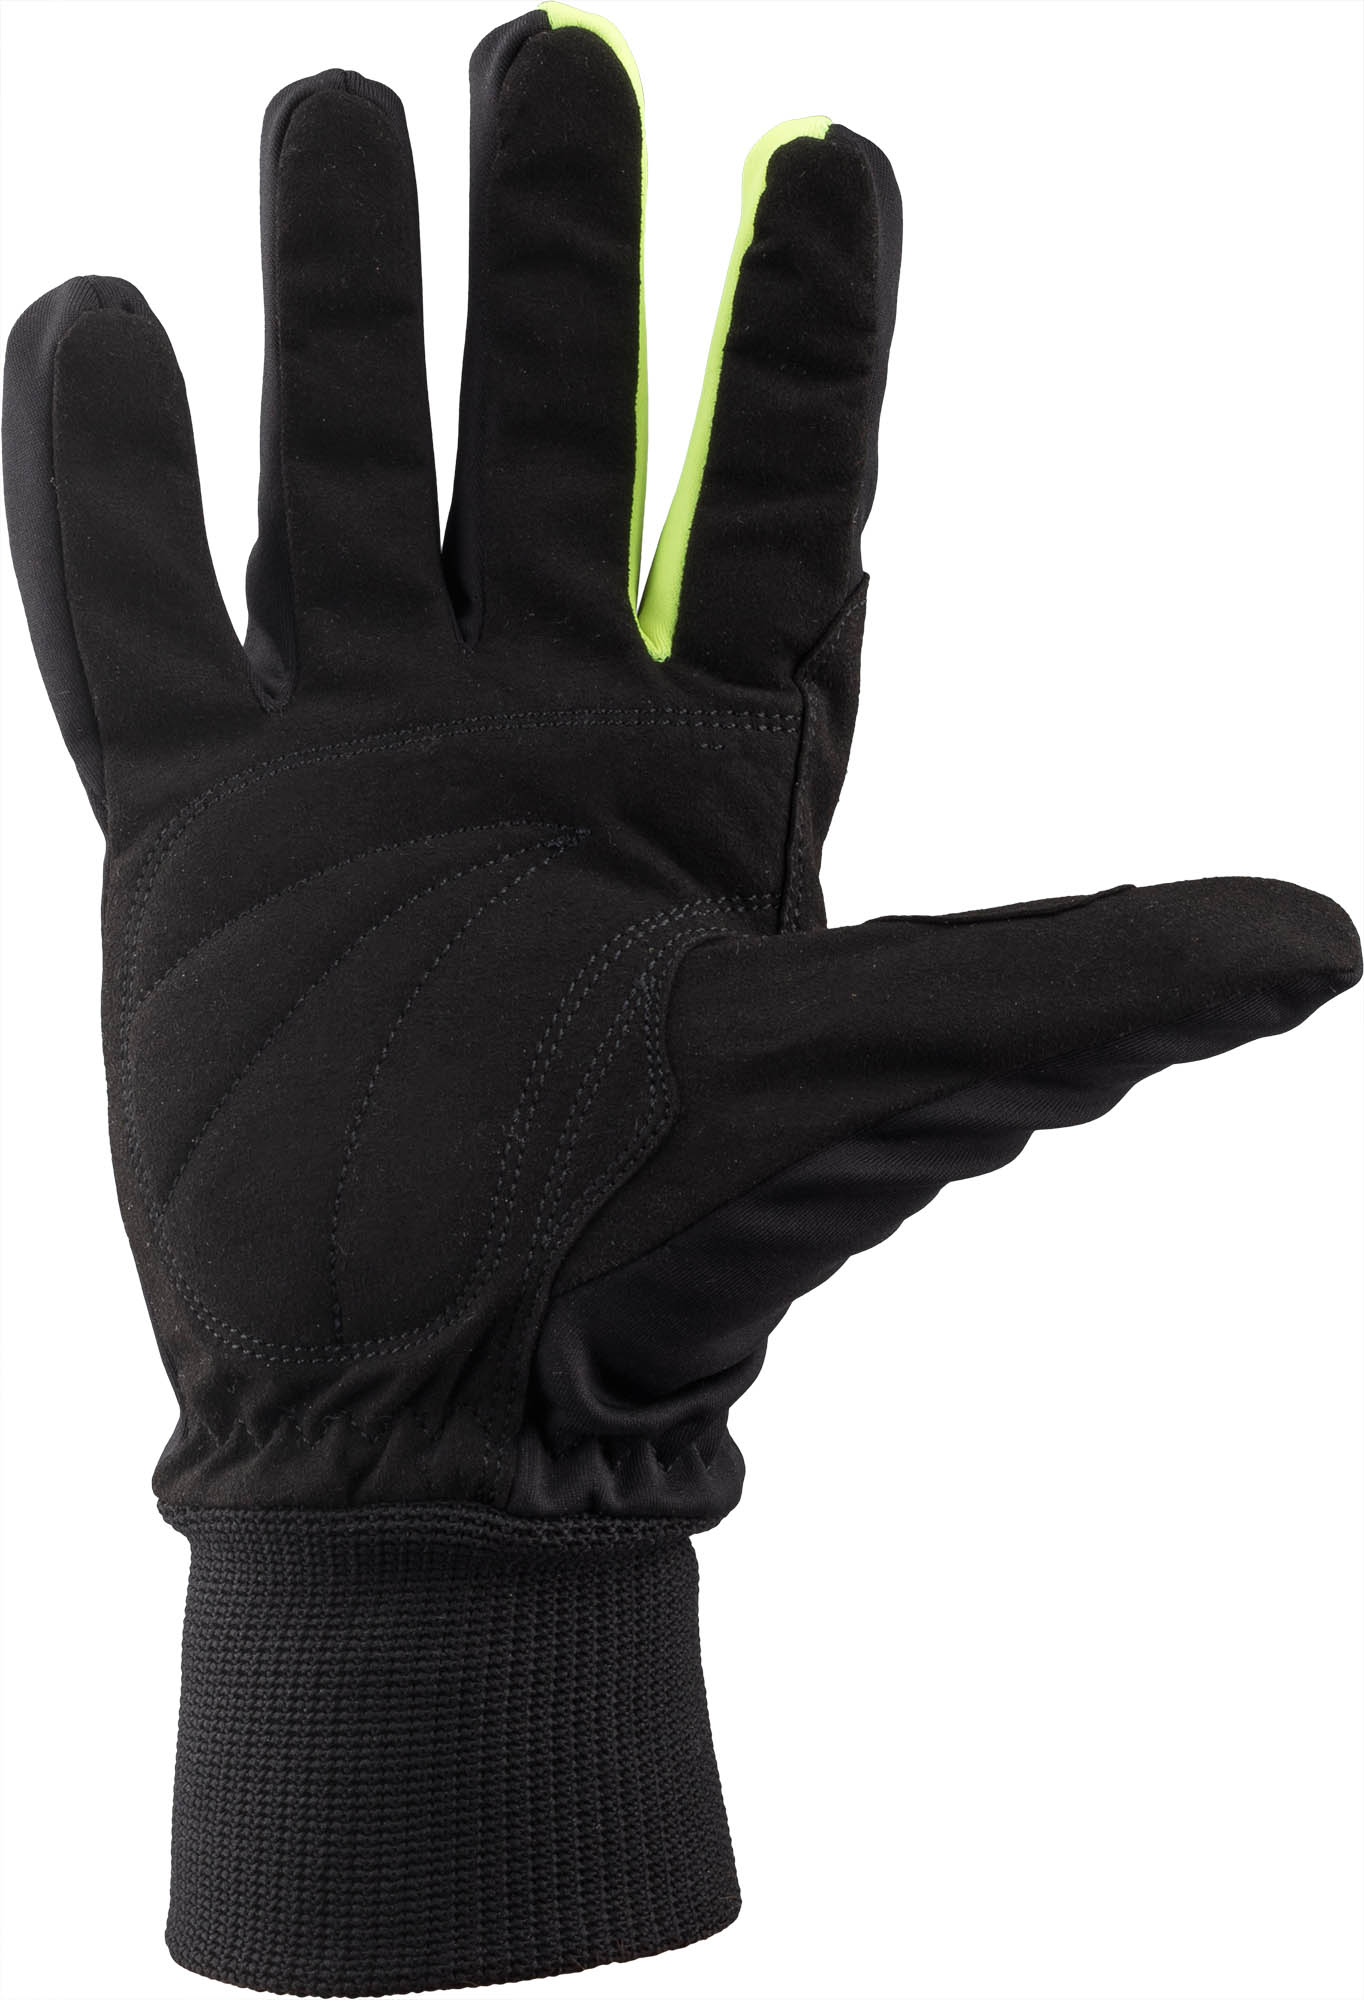 Winter Handschuhe für den Langlauf